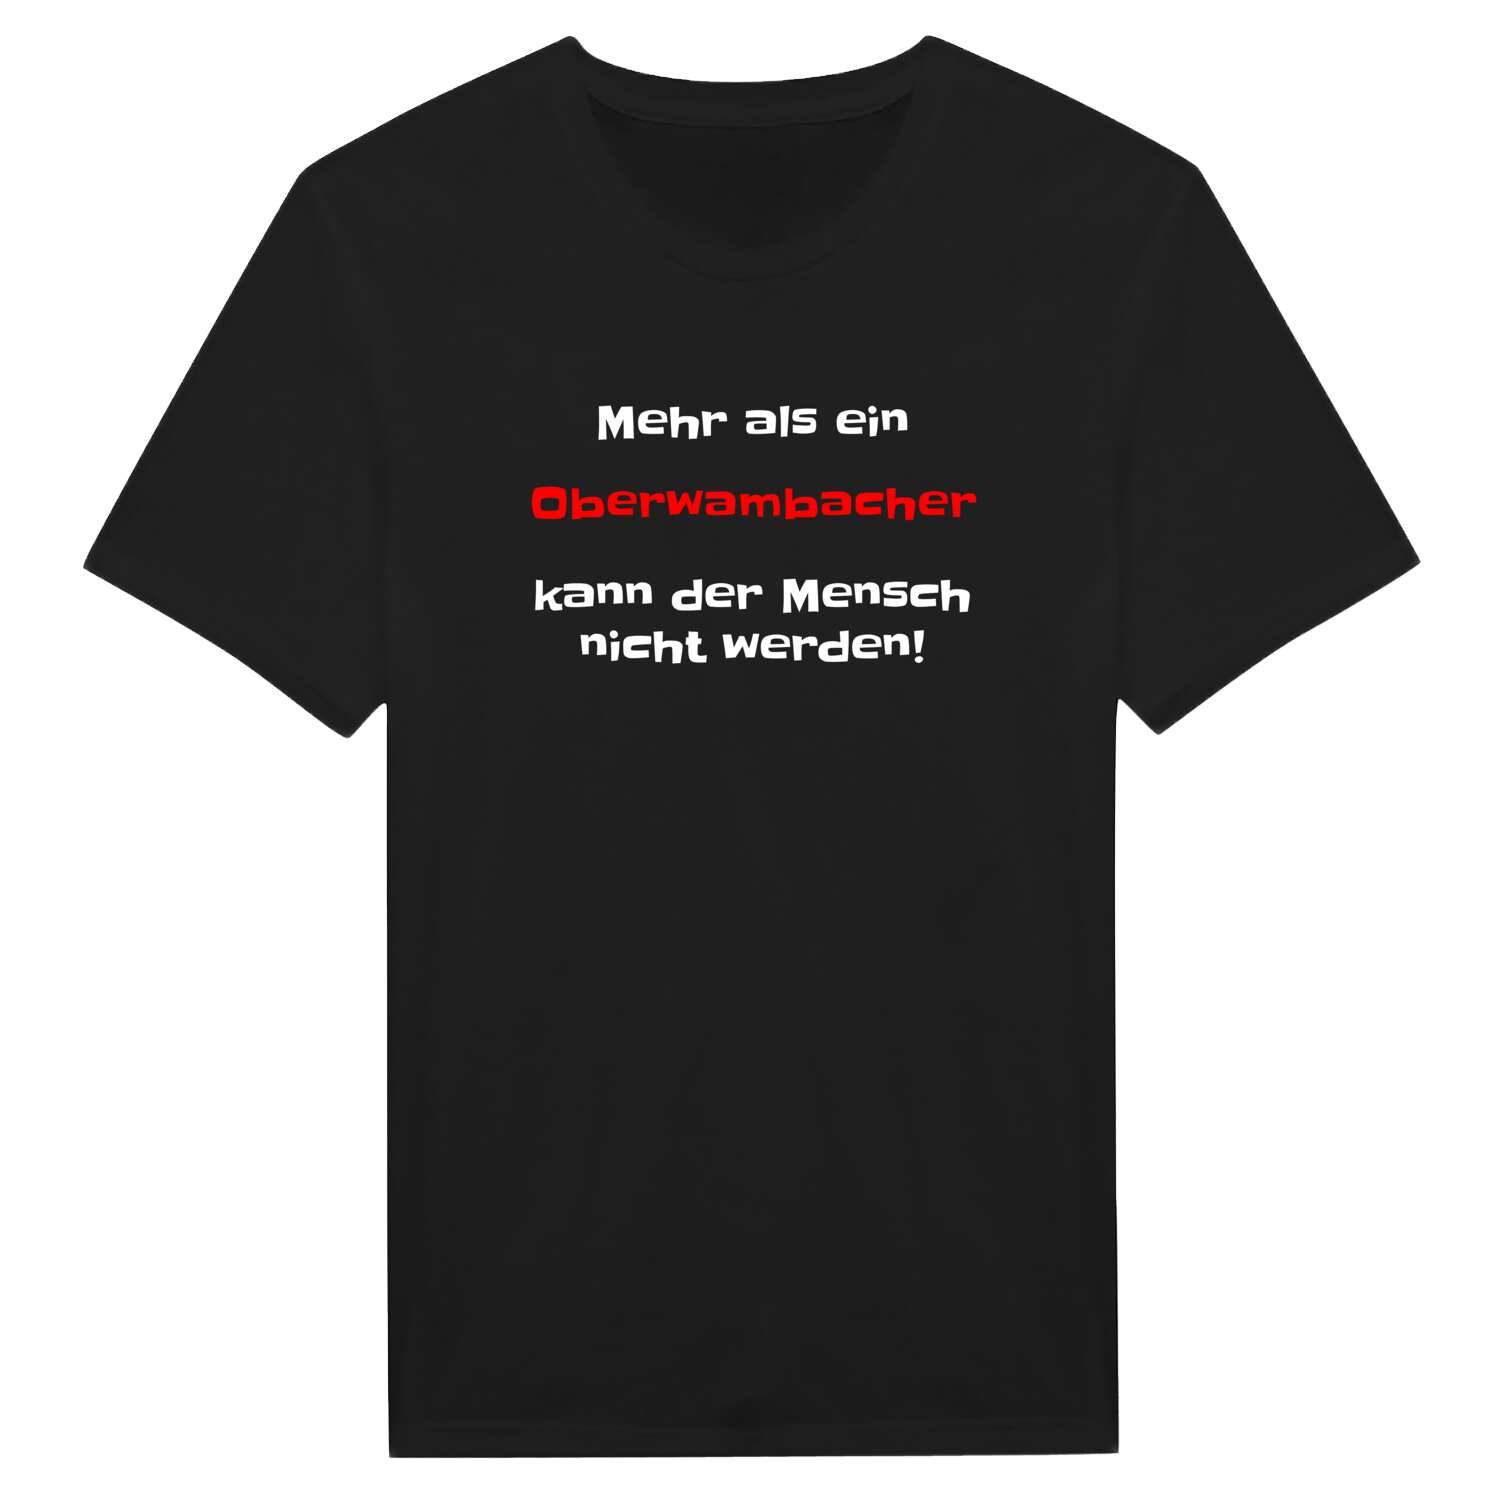 Oberwambach T-Shirt »Mehr als ein«